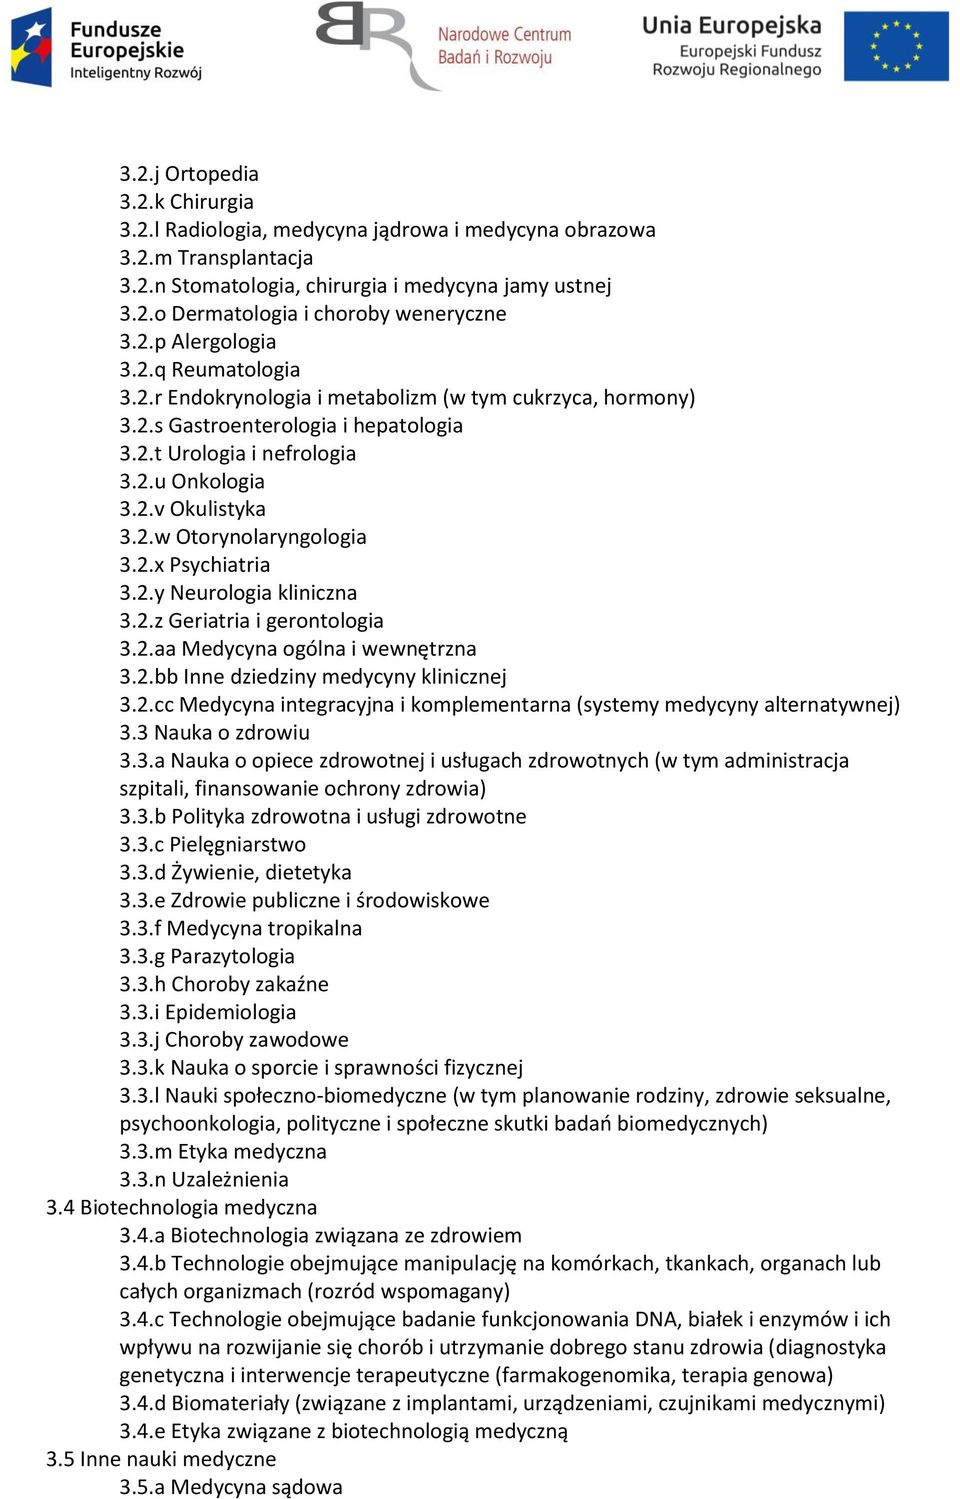 2.x Psychiatria 3.2.y Neurologia kliniczna 3.2.z Geriatria i gerontologia 3.2.aa Medycyna ogólna i wewnętrzna 3.2.bb Inne dziedziny medycyny klinicznej 3.2.cc Medycyna integracyjna i komplementarna (systemy medycyny alternatywnej) 3.